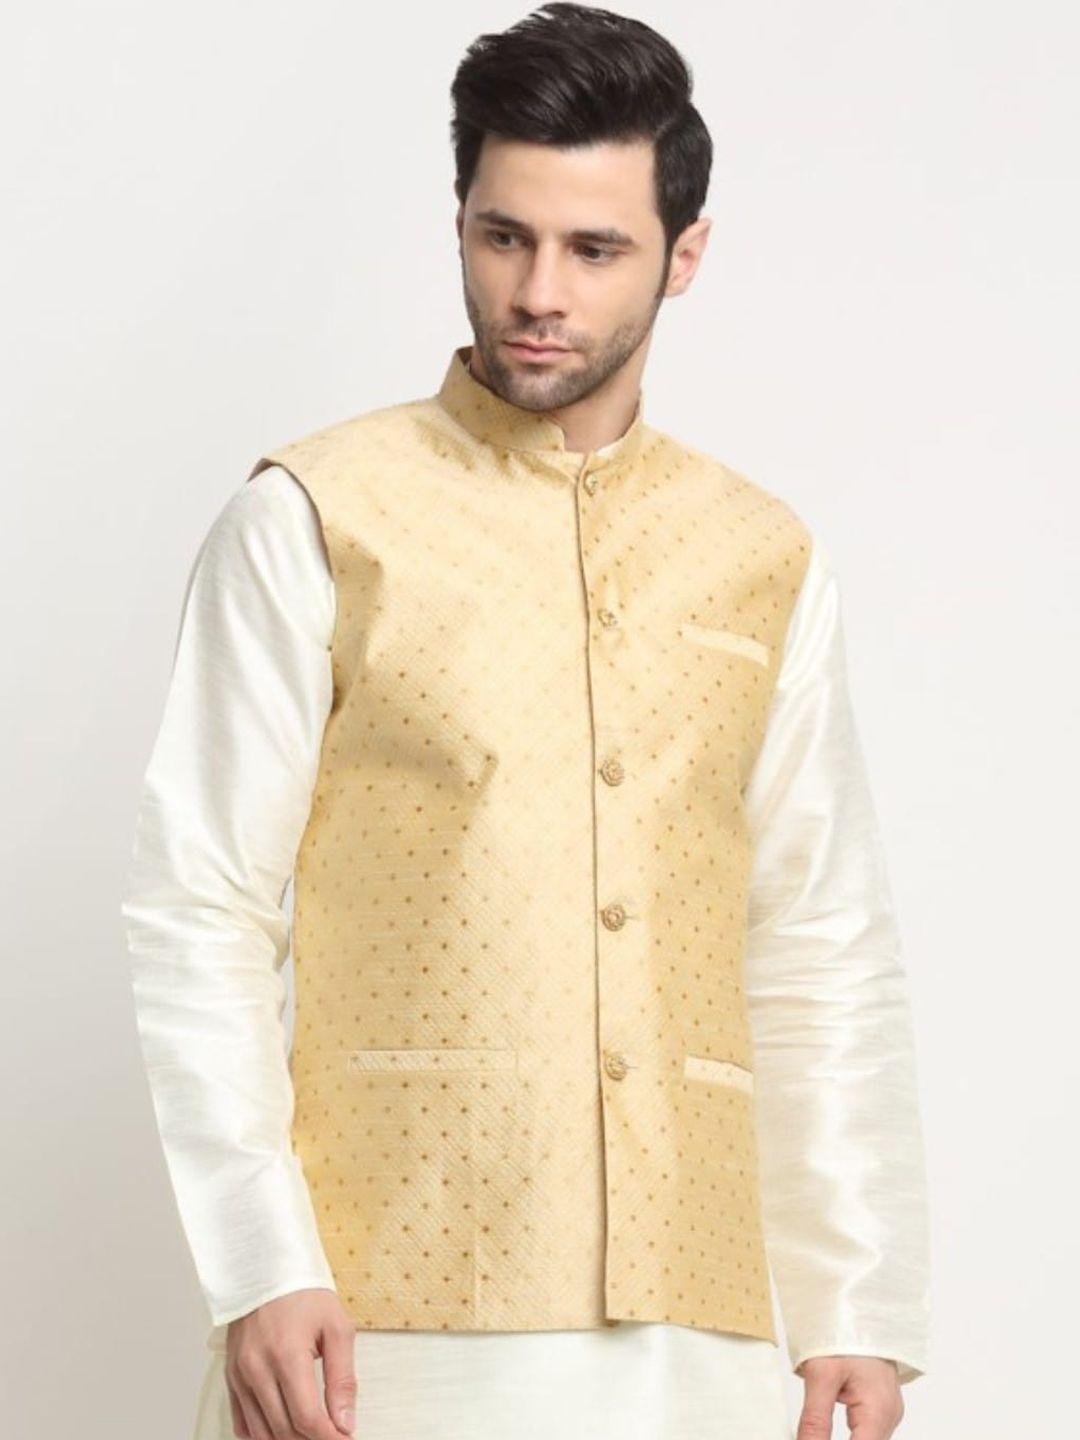 KRAFT INDIA Ethnic Motifs Woven Design Nehru Jackets